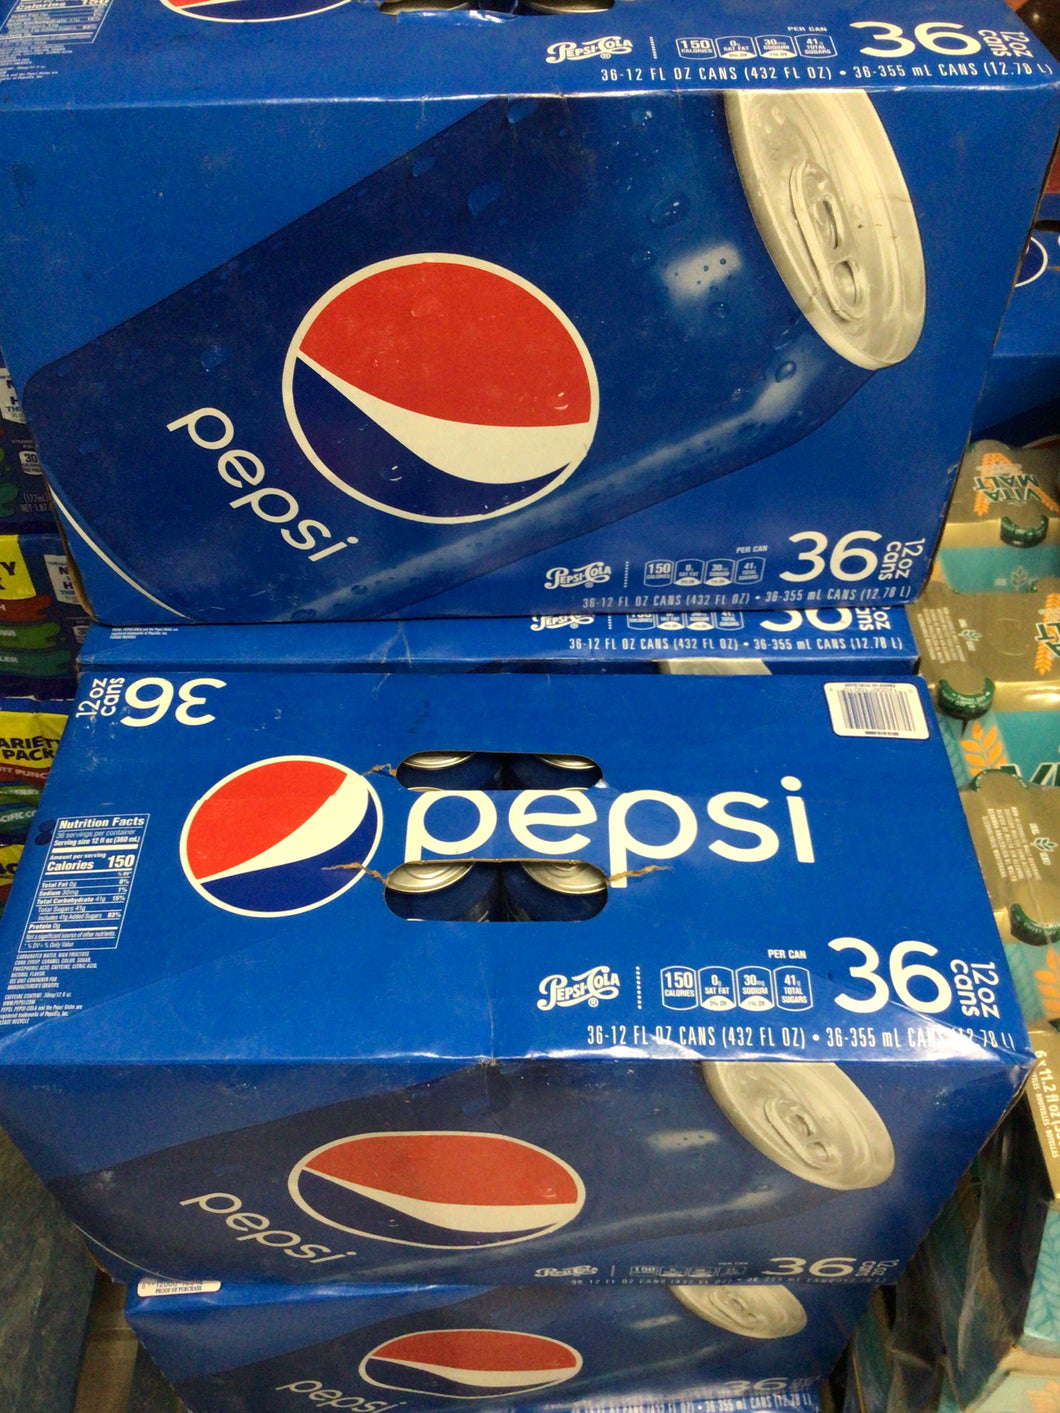 Pepsi case 36pk